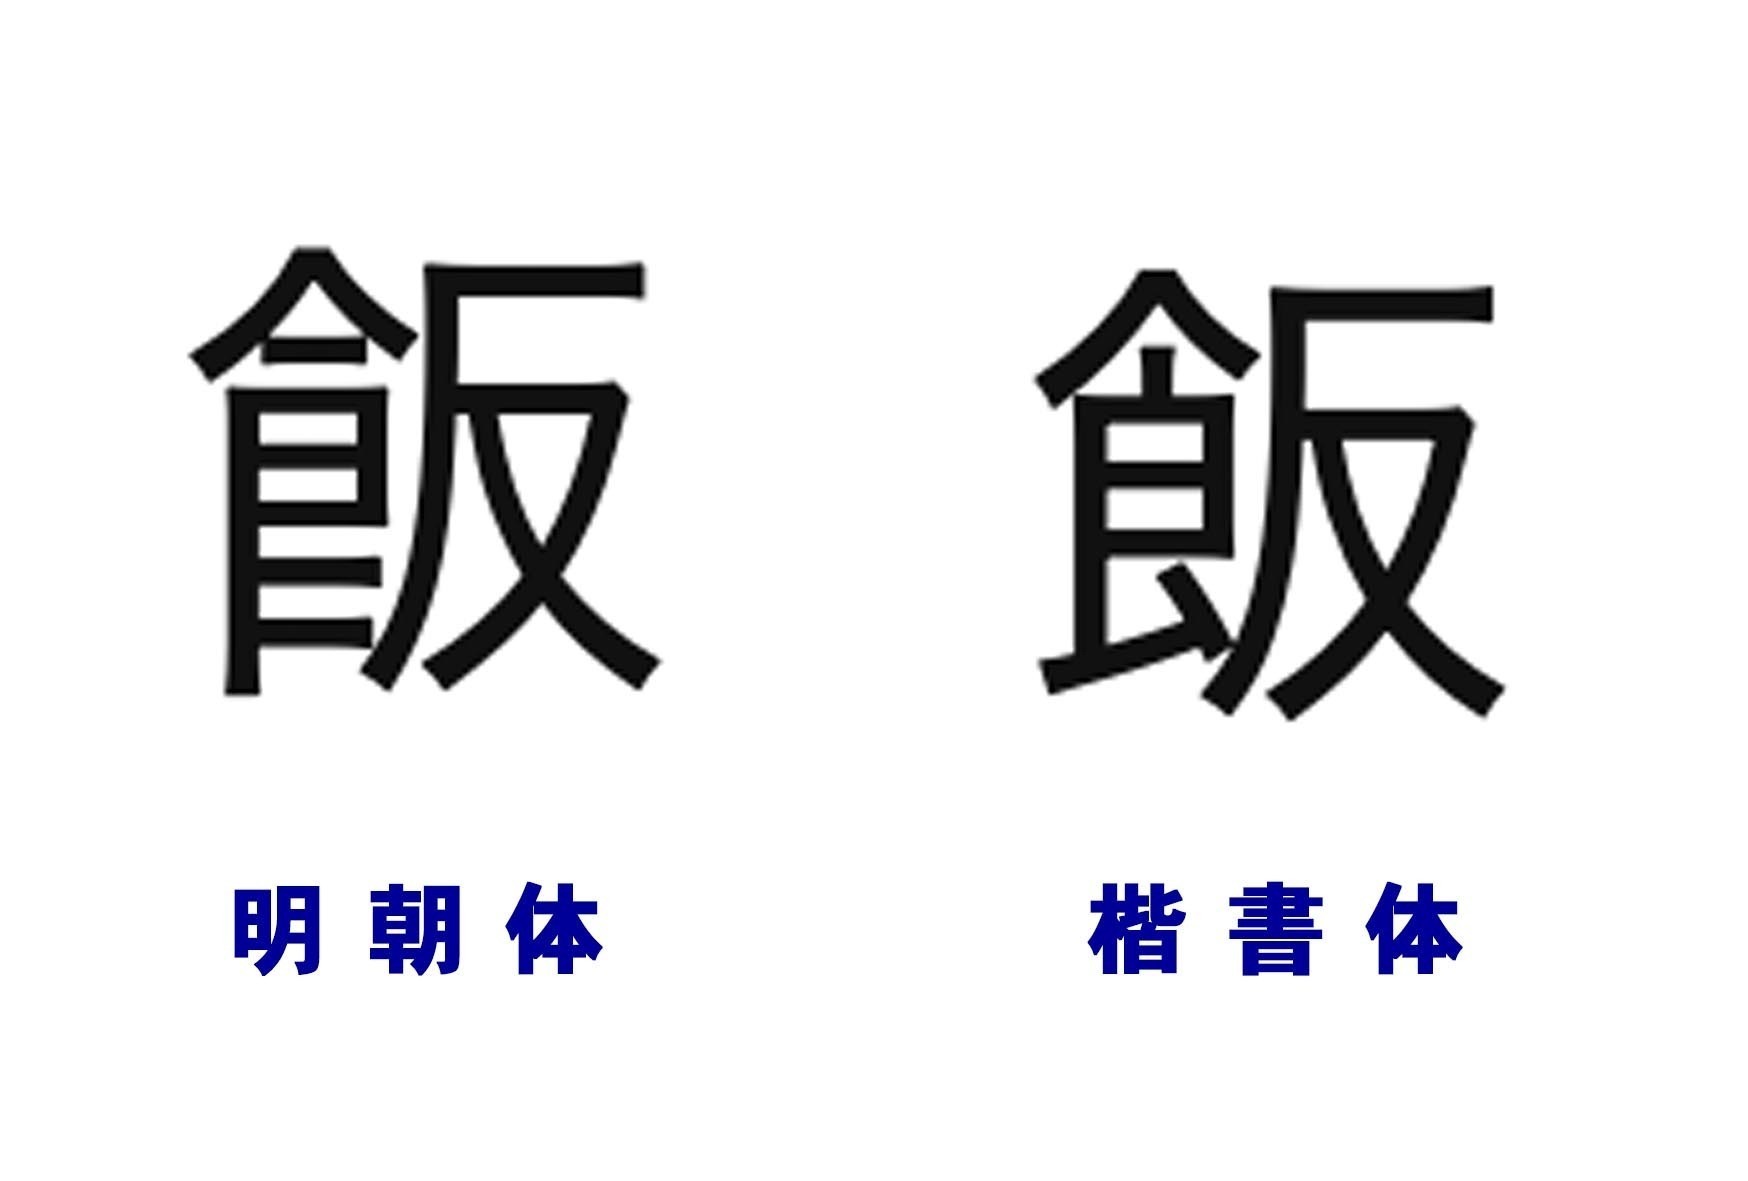 雑感 漢字の字体の変遷 許容 昭和 平成の思い出をつづる